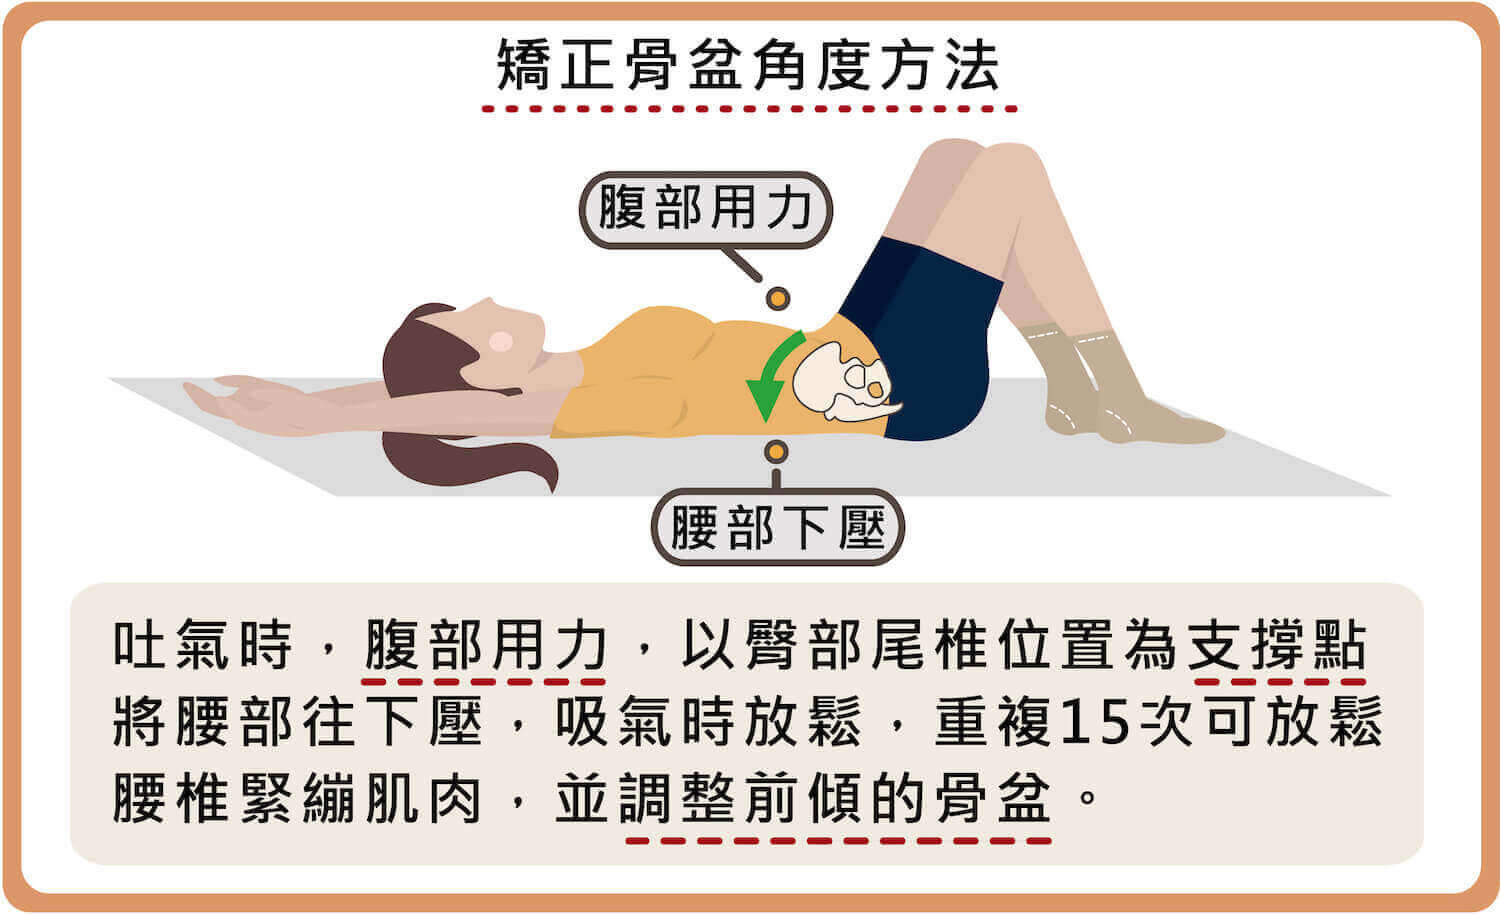 矯正骨盆角度方法-02吐氣時腹部出力將腰部往下壓，調整前傾的骨盆